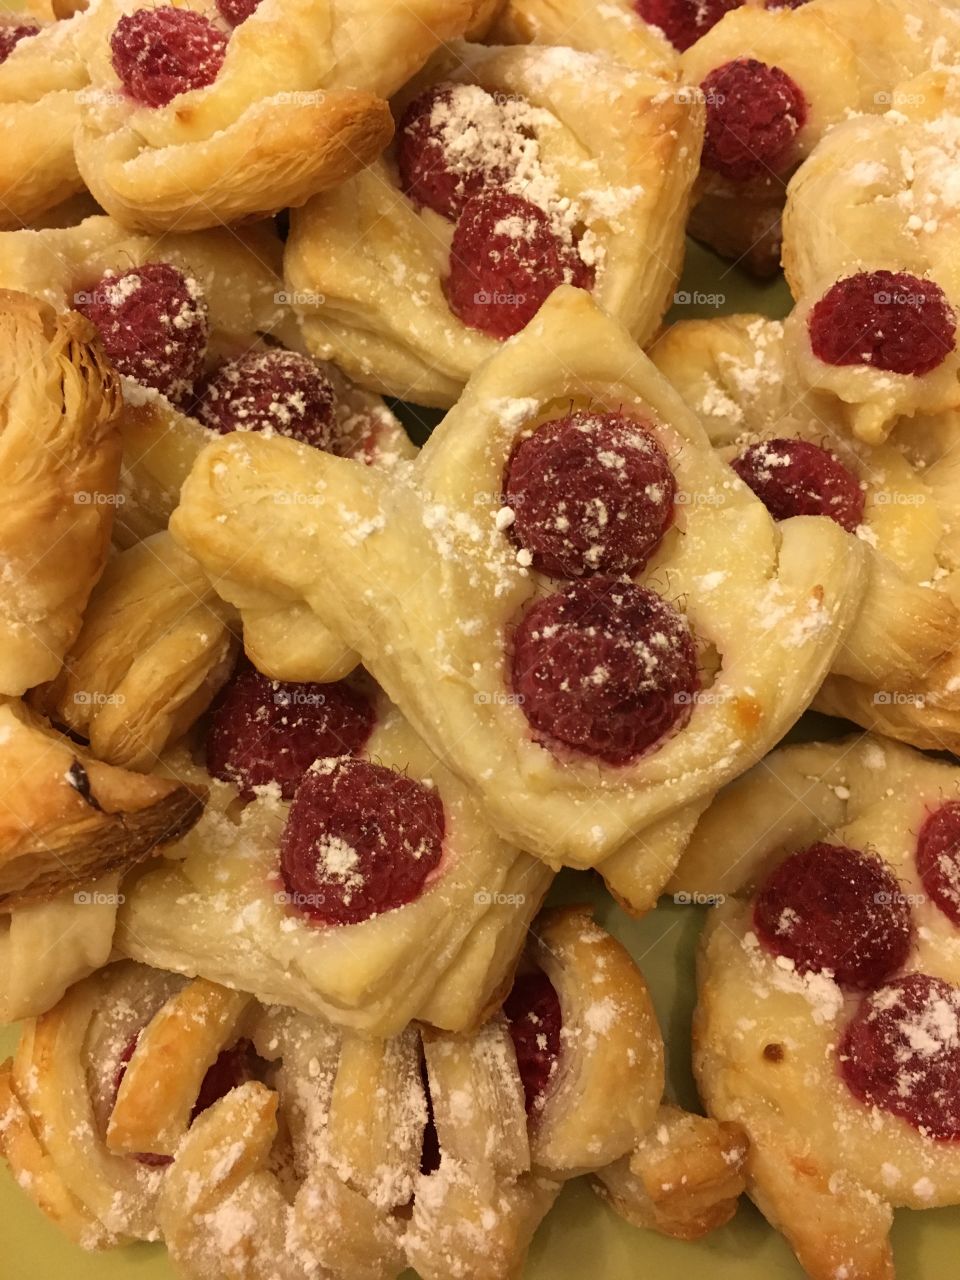 Raspberry pastries